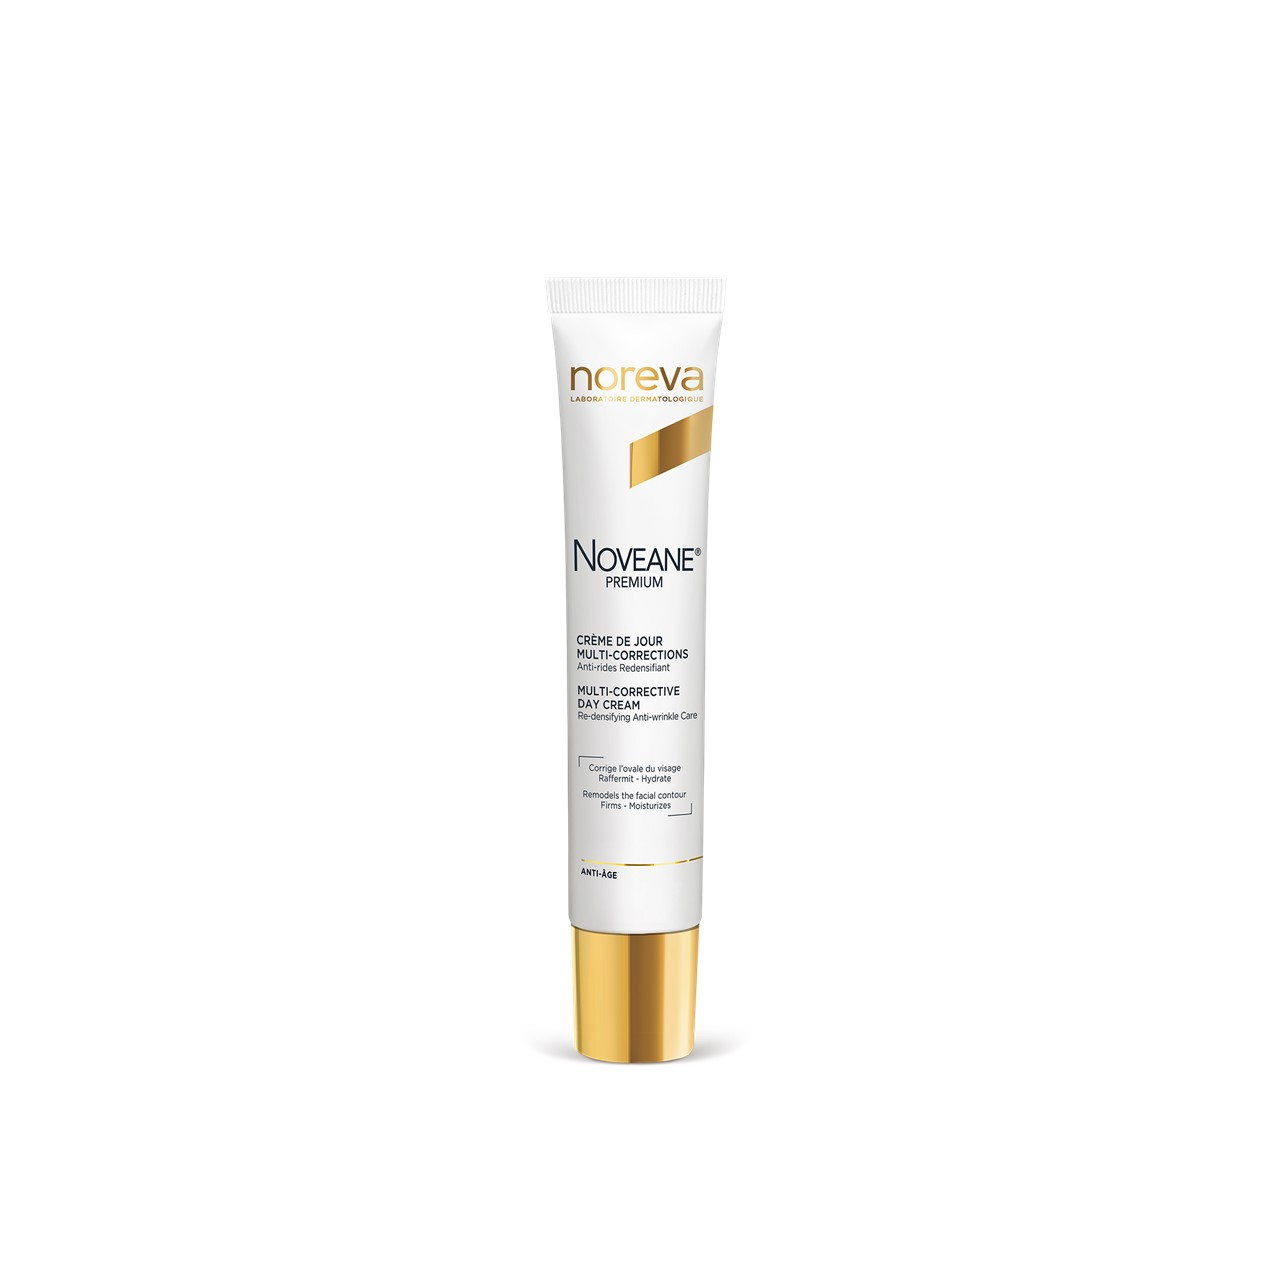 Noreva Noveane Premium Multi-Corrective Day Cream 40ml (1.35fl oz)